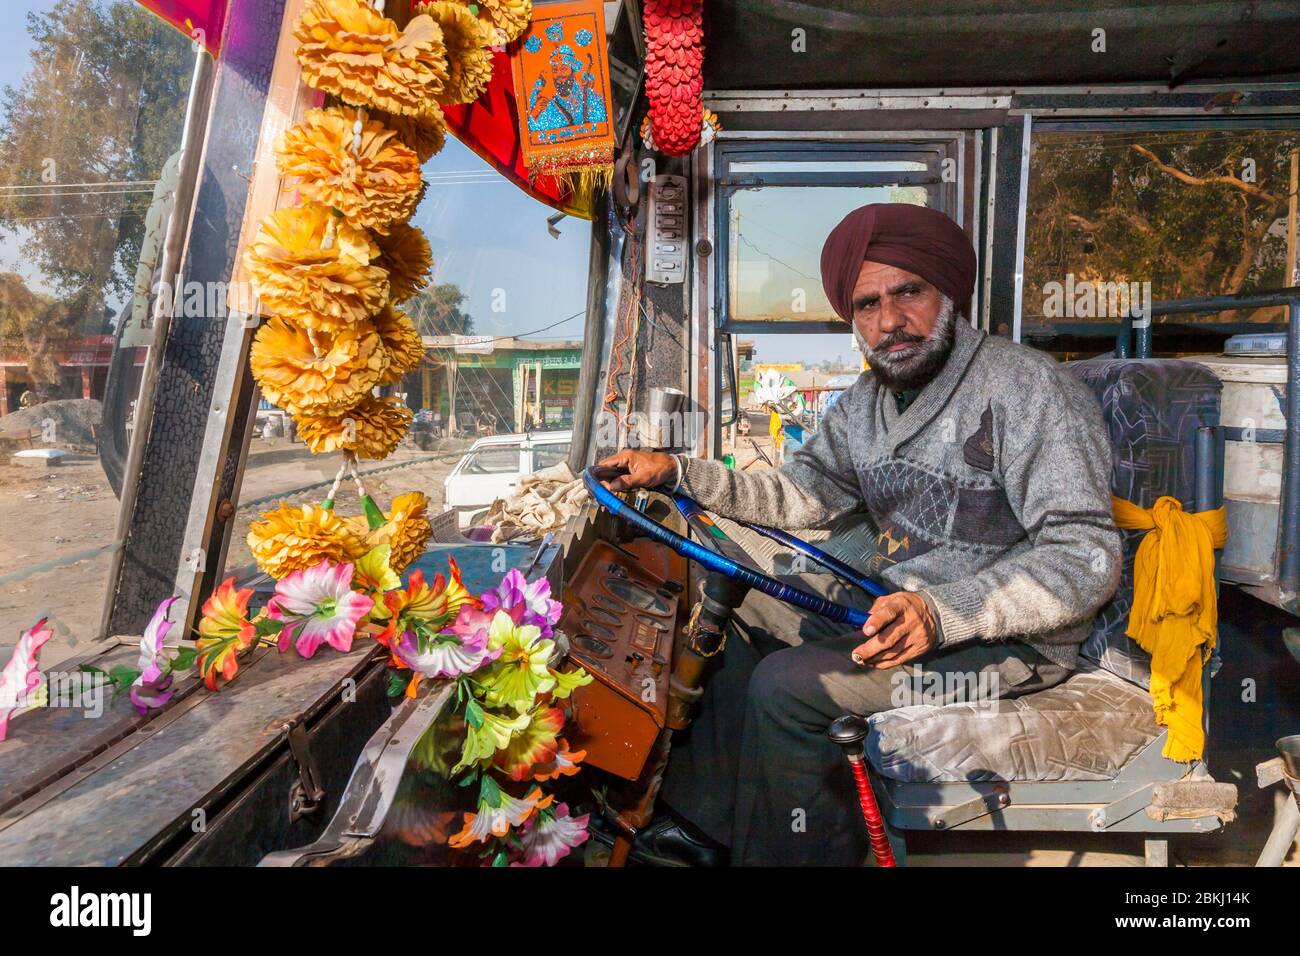 Inde, État du Pendjab, Atari, chauffeur Sikh, bus pour poste frontalier de Wagah, frontière indo-pakistanaise Banque D'Images